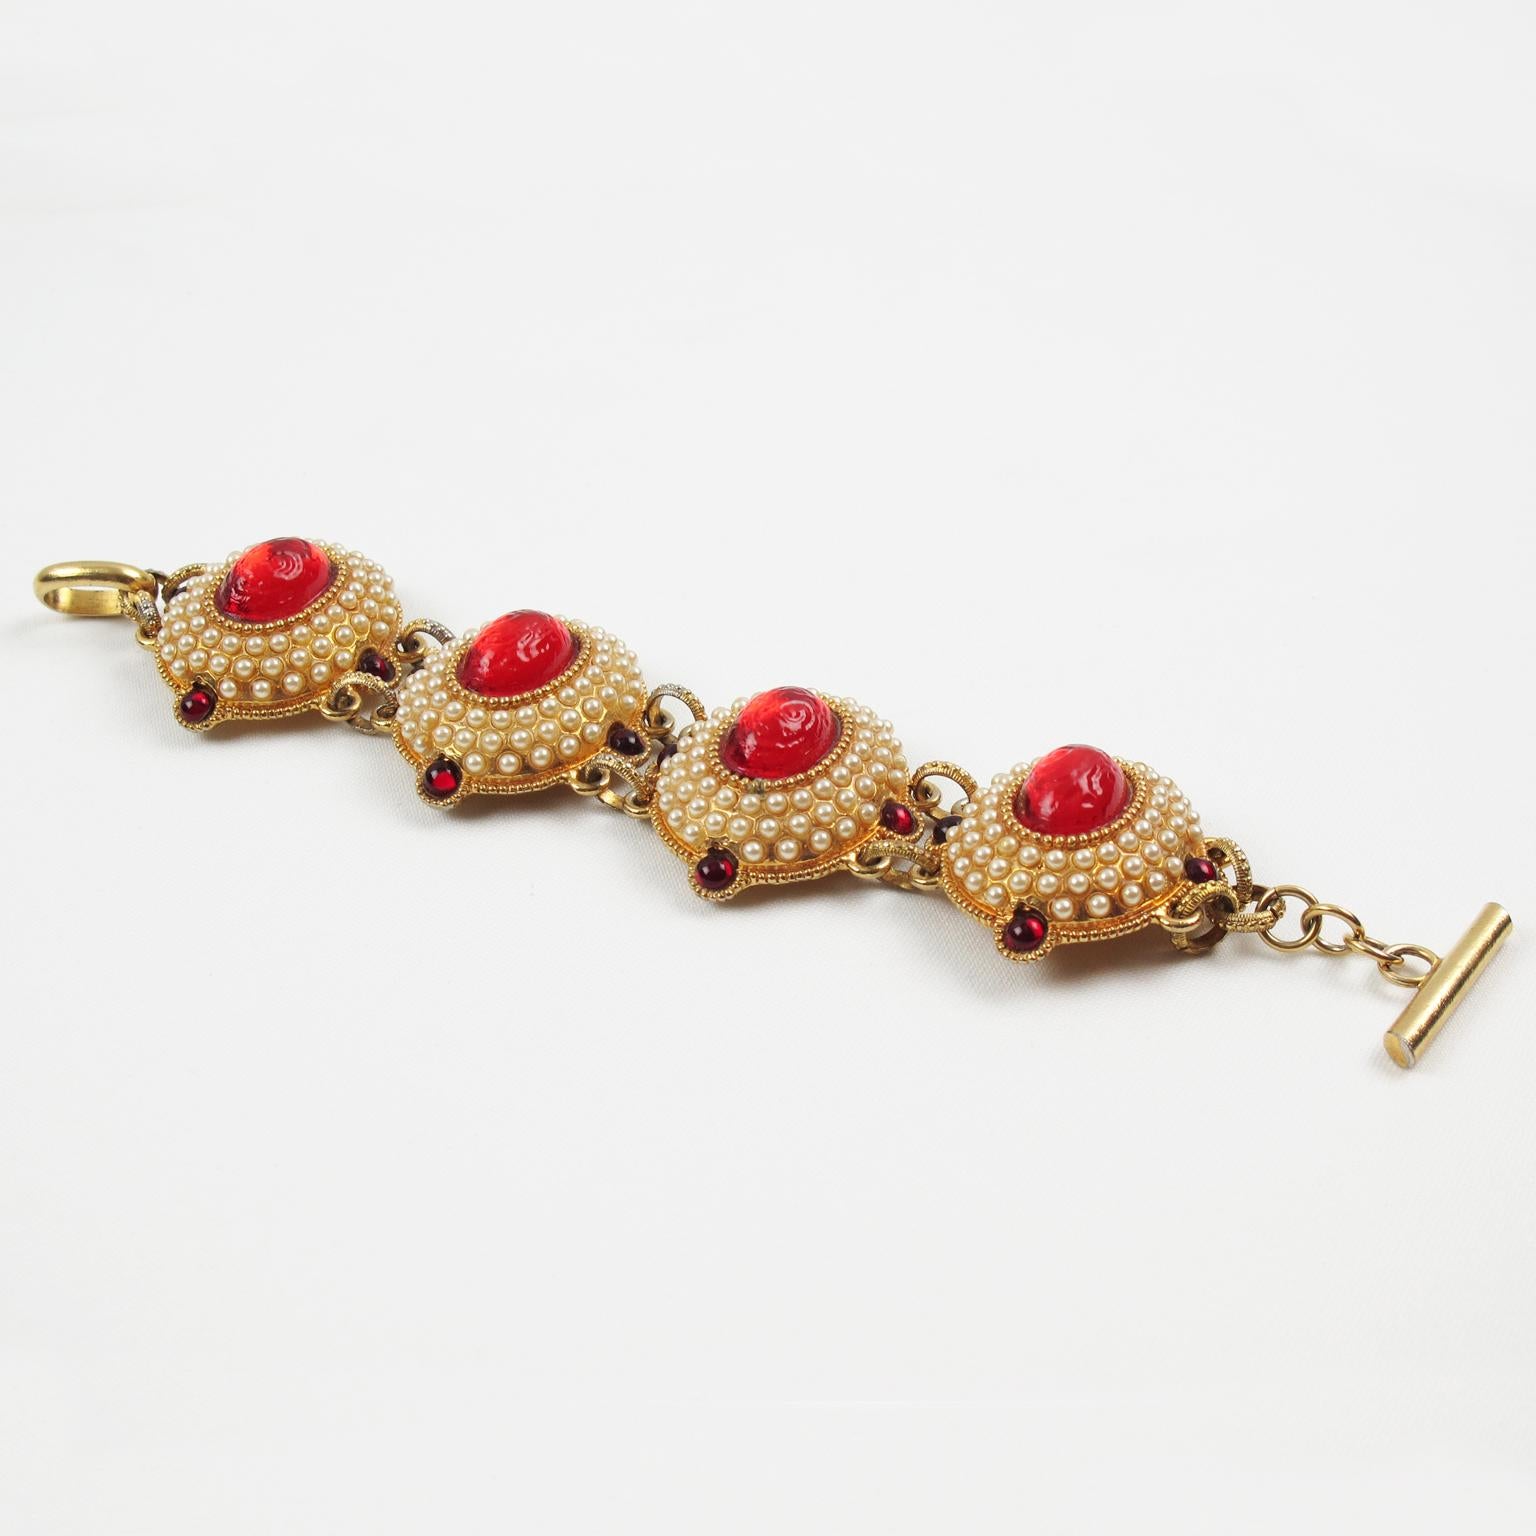 Ce ravissant bracelet bijou de la créatrice française Chantal Thomass Paris présente des éléments sculptés et bombés en métal doré, tous pavés et ornés de demi-perles et de cabochons rouge rubis. Un impressionnant cabochon de résine texturée rouge